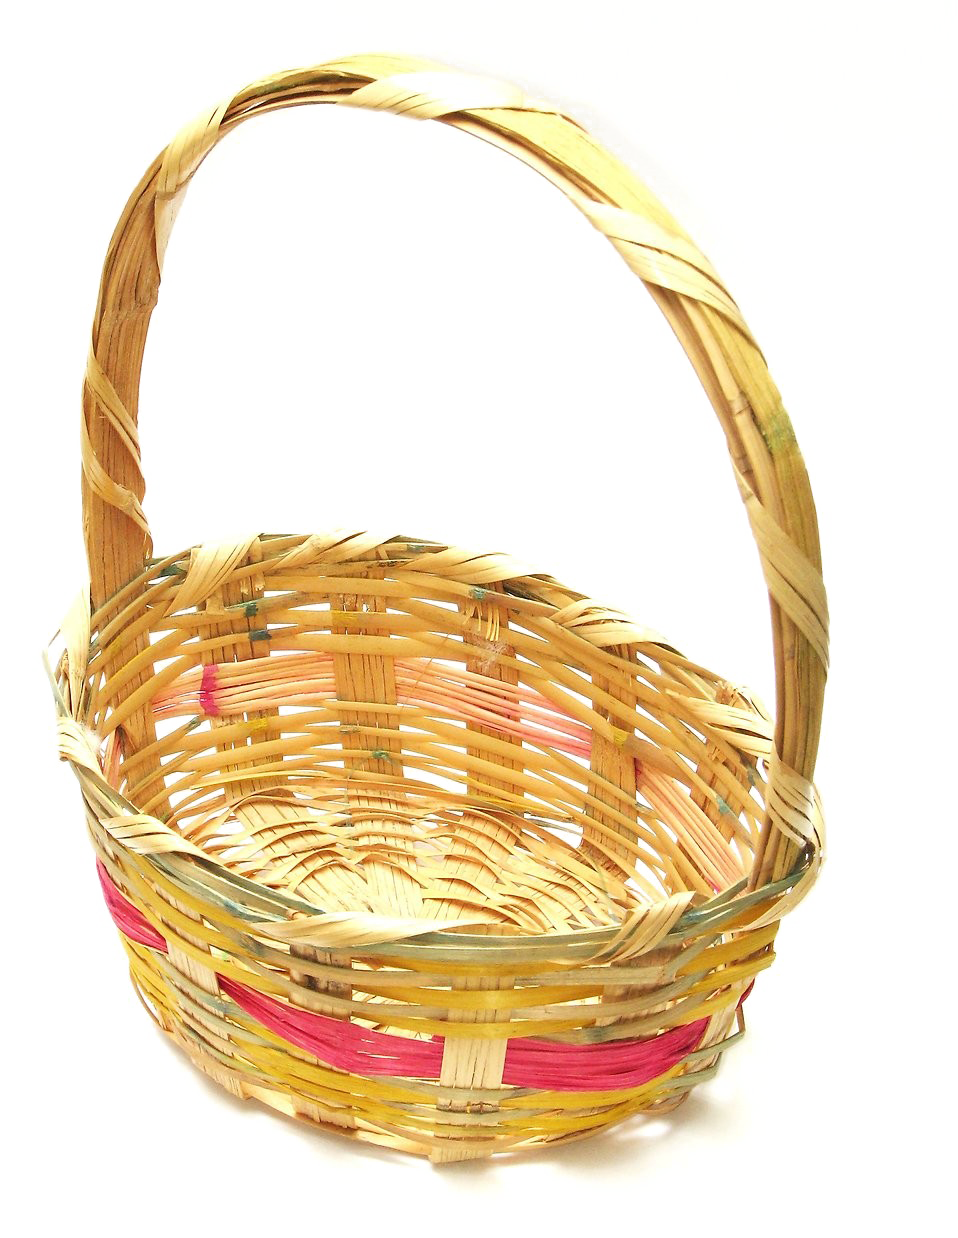 Imagen PNG de la cesta de Pascua